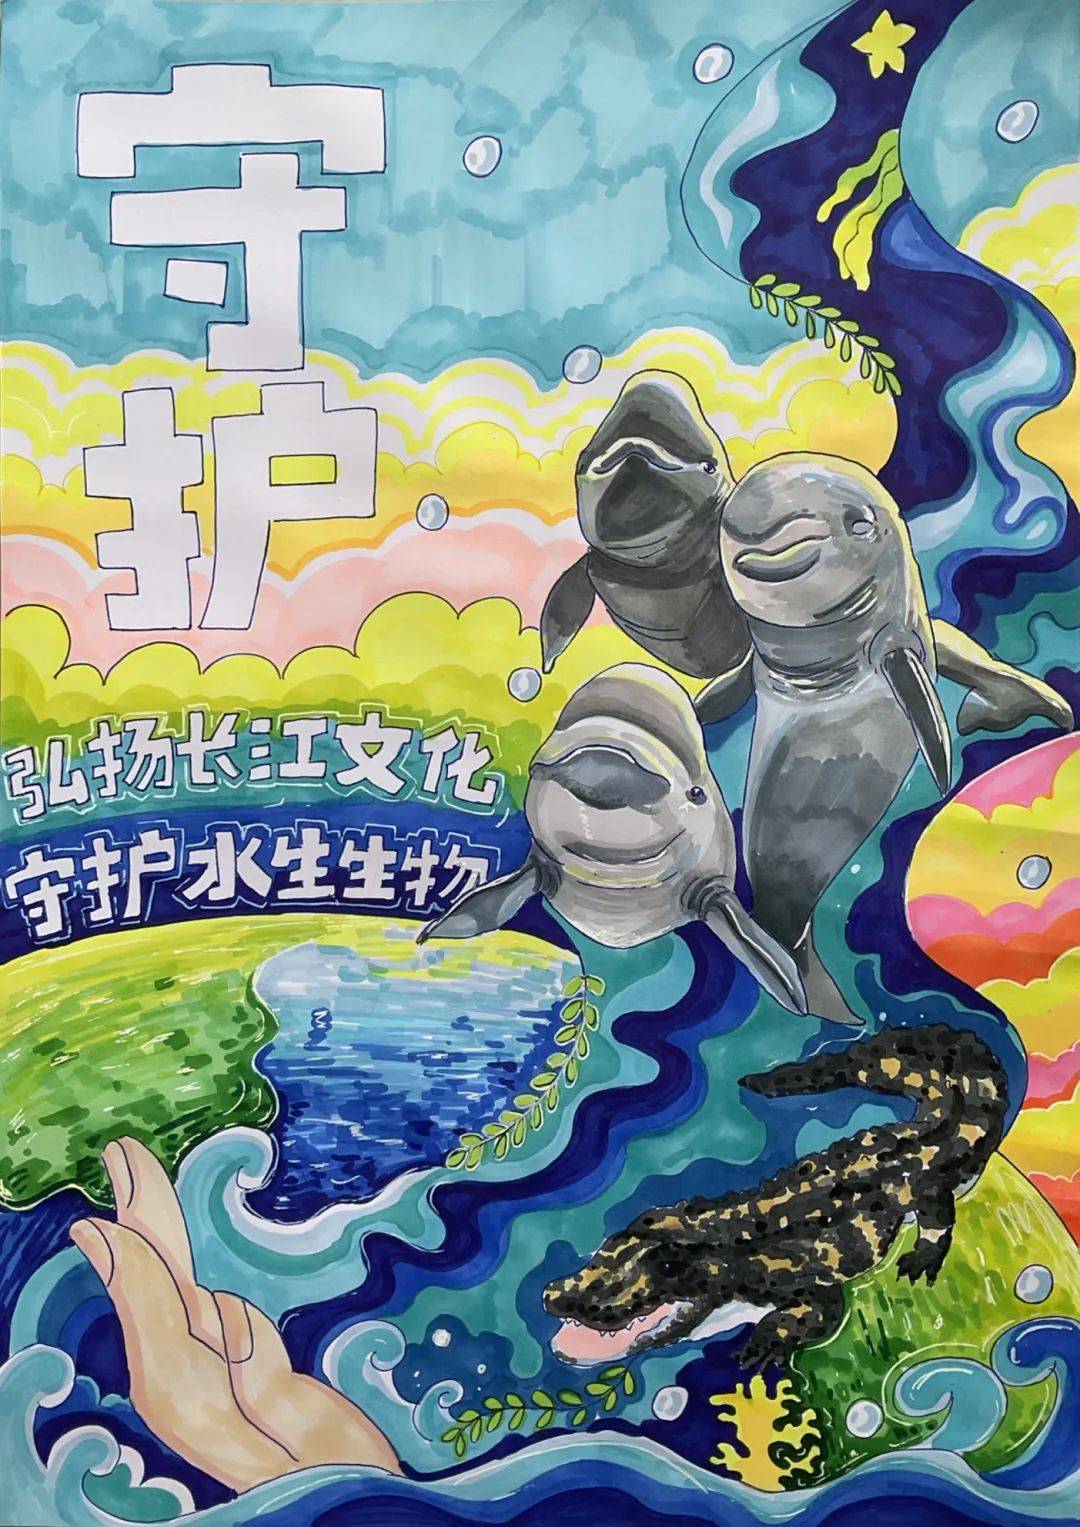 文化,守护水生生物主题公益海报设计大赛获奖作品公示